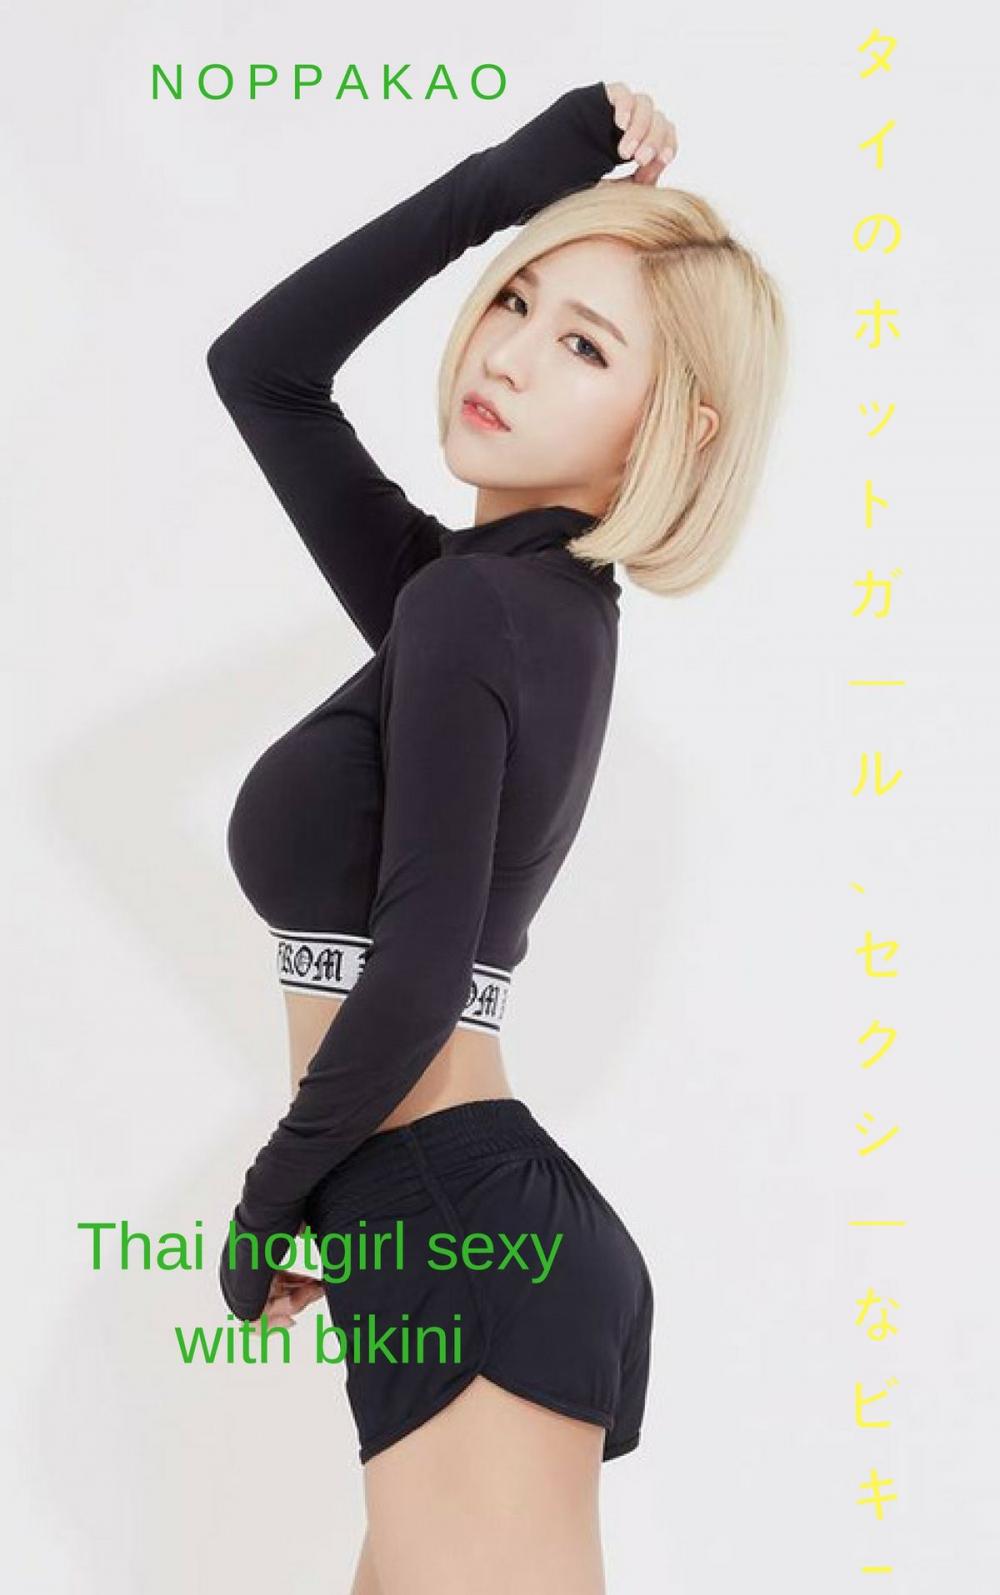 Big bigCover of ビキニでセクシーなタイのホットガール-Noppakao Thai hotgirl sexy with bikini - Noppakao